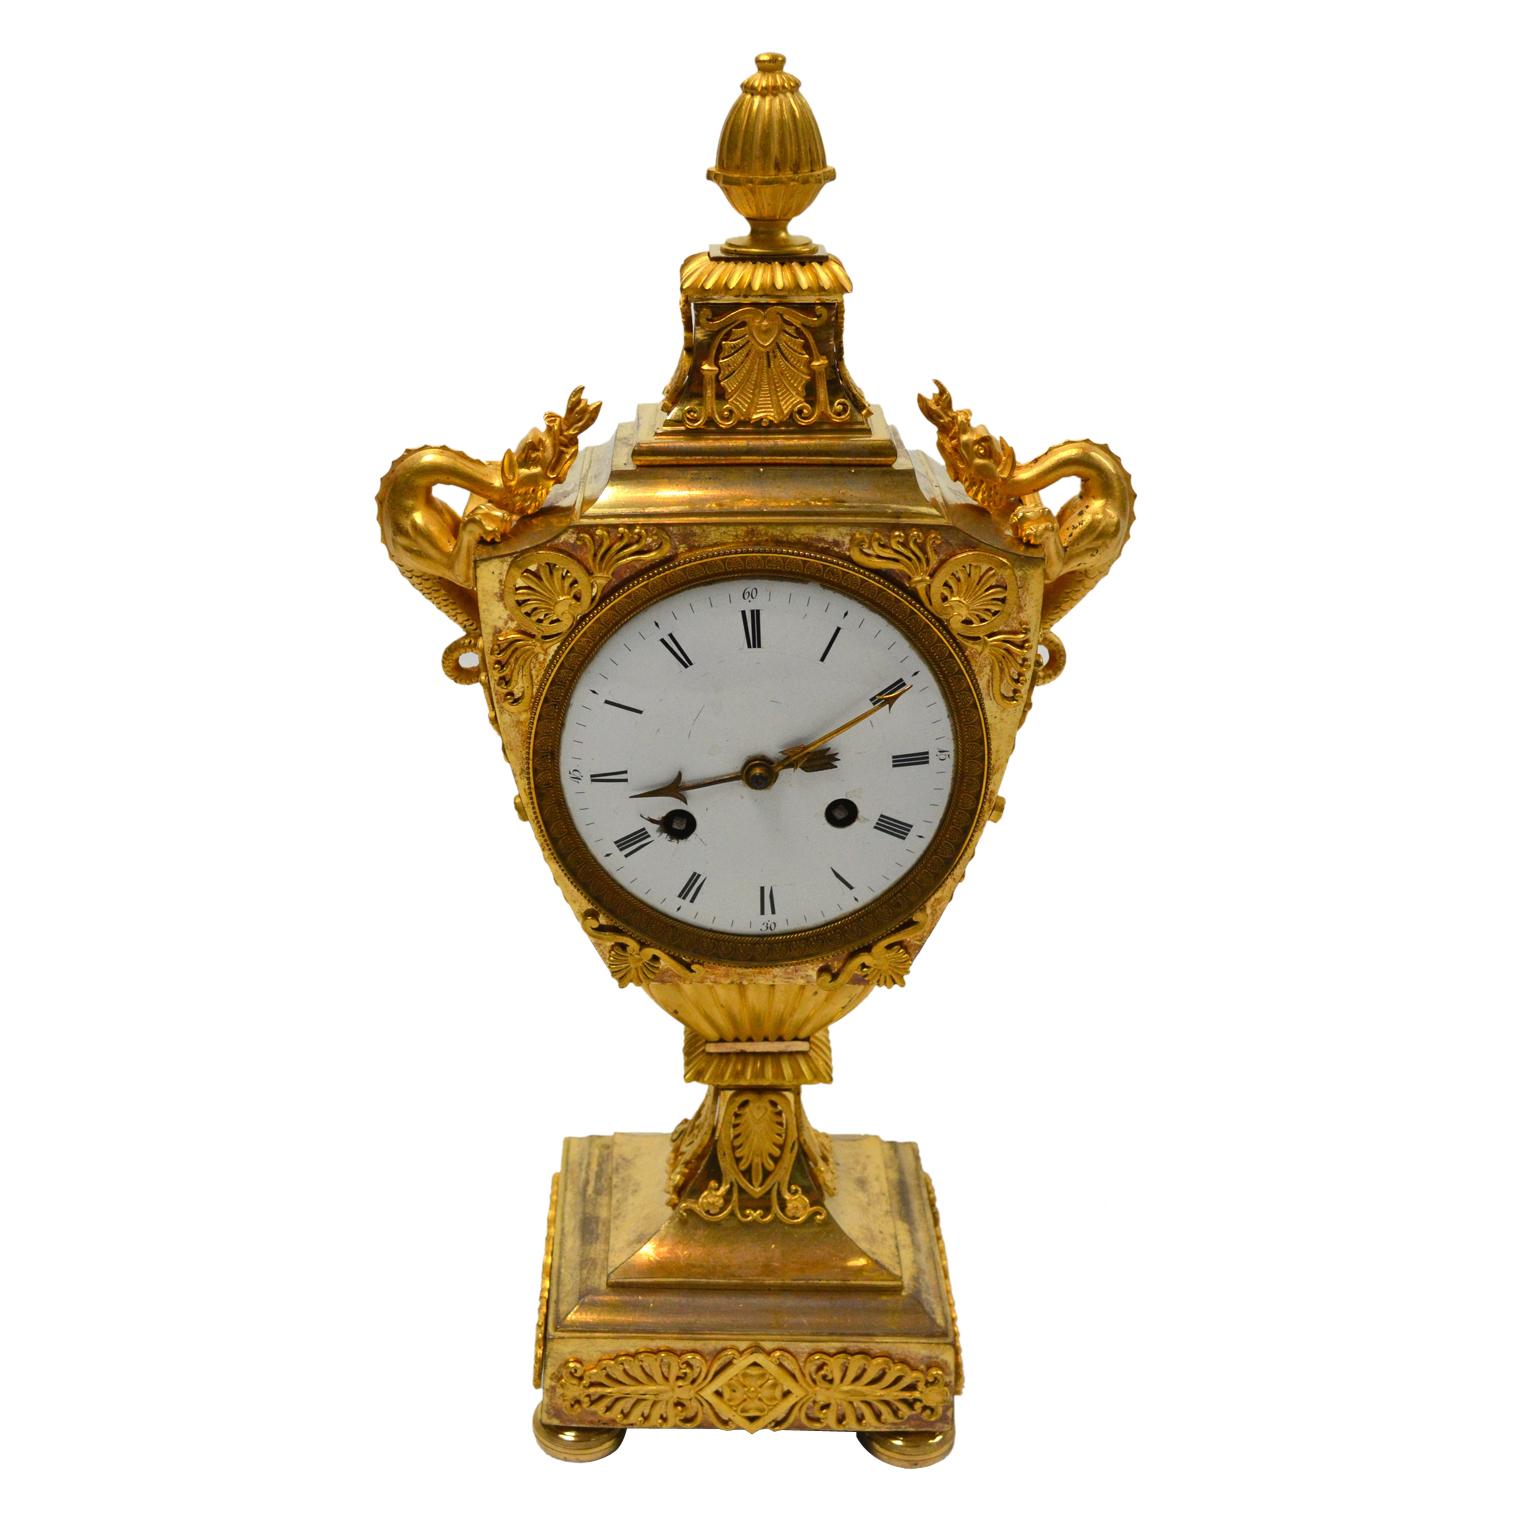 Un modèle rare d'horloge de cheminée de style Empire français présentant une urne classique avec des poignées en forme de dragon. L'horloge est entièrement en bronze doré avec une dorure au feu originale. Le boîtier en forme d'urne est surmonté d'un